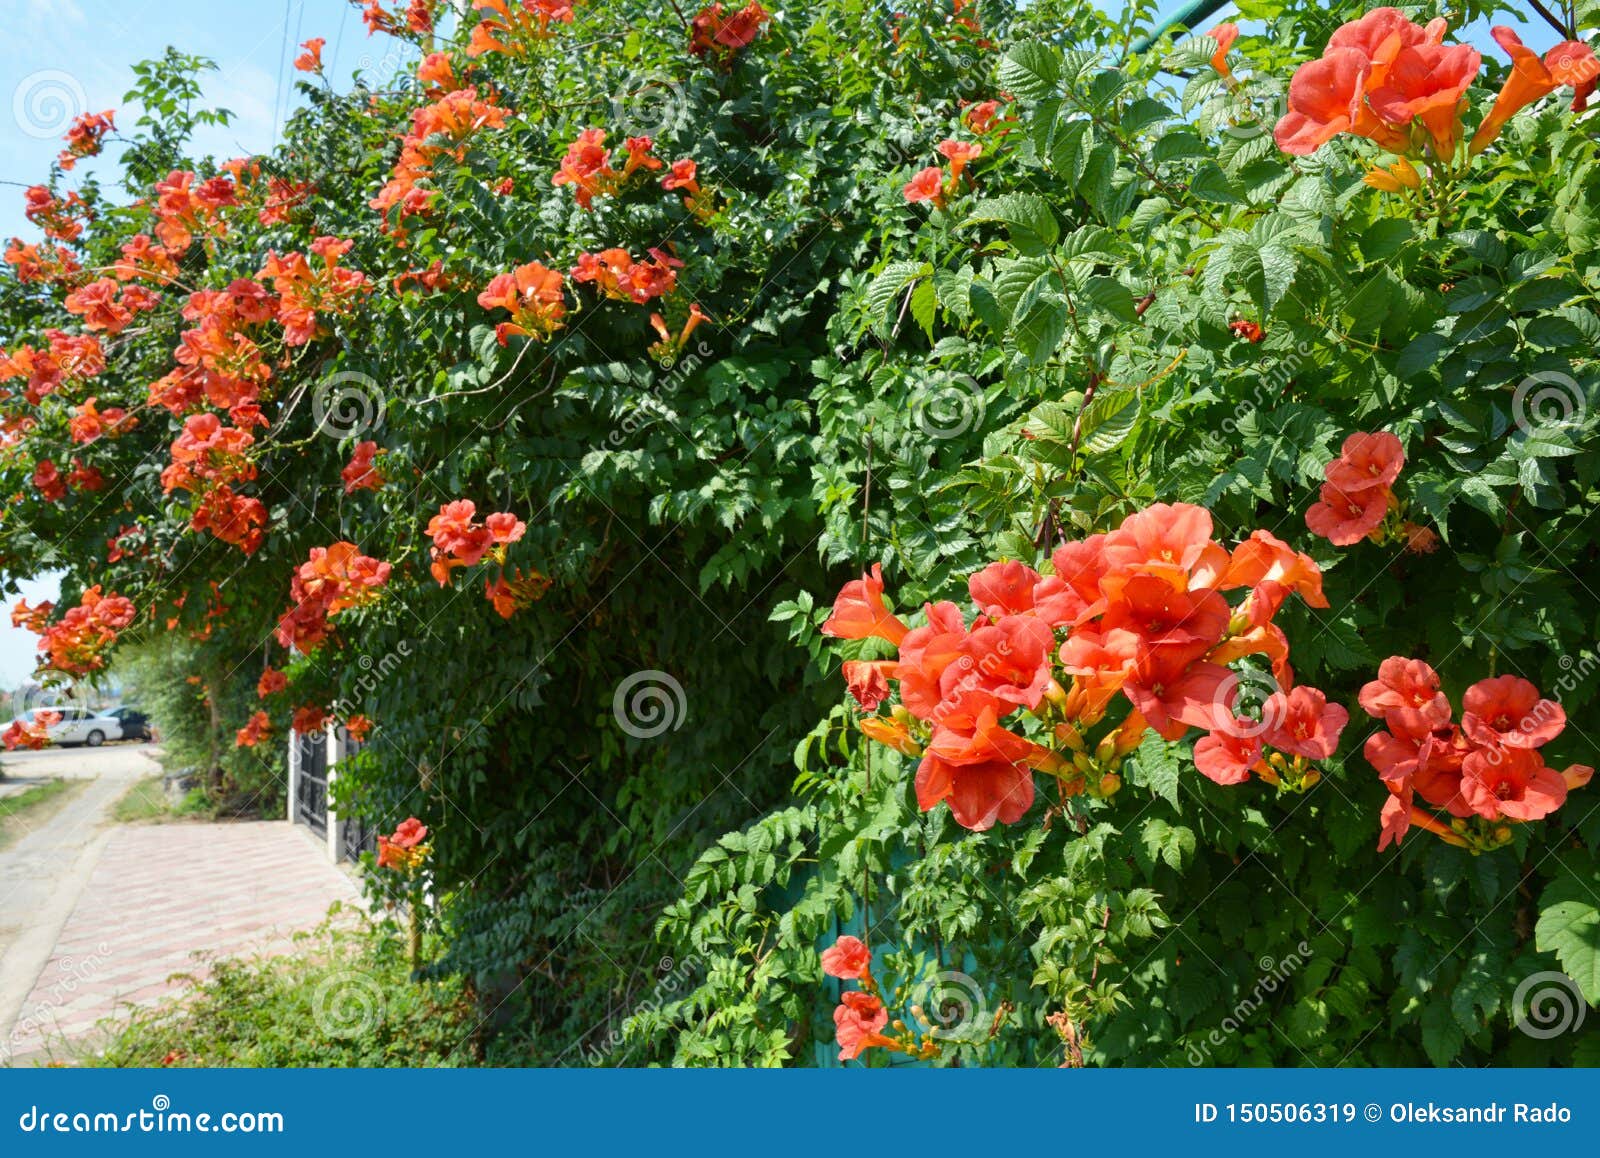 Photos de Les Fleurs De Plante Grimpante De Trompette D Orange - Photos de  stock gratuites et libres de droits de Dreamstime